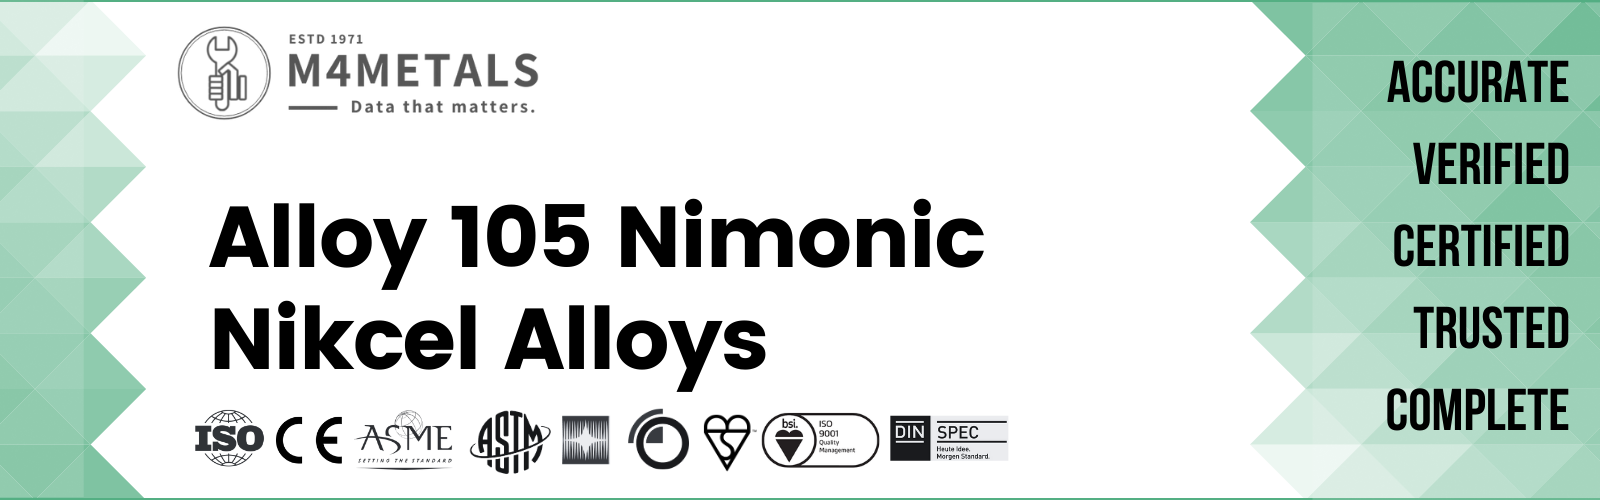 Nimonic Alloy 105